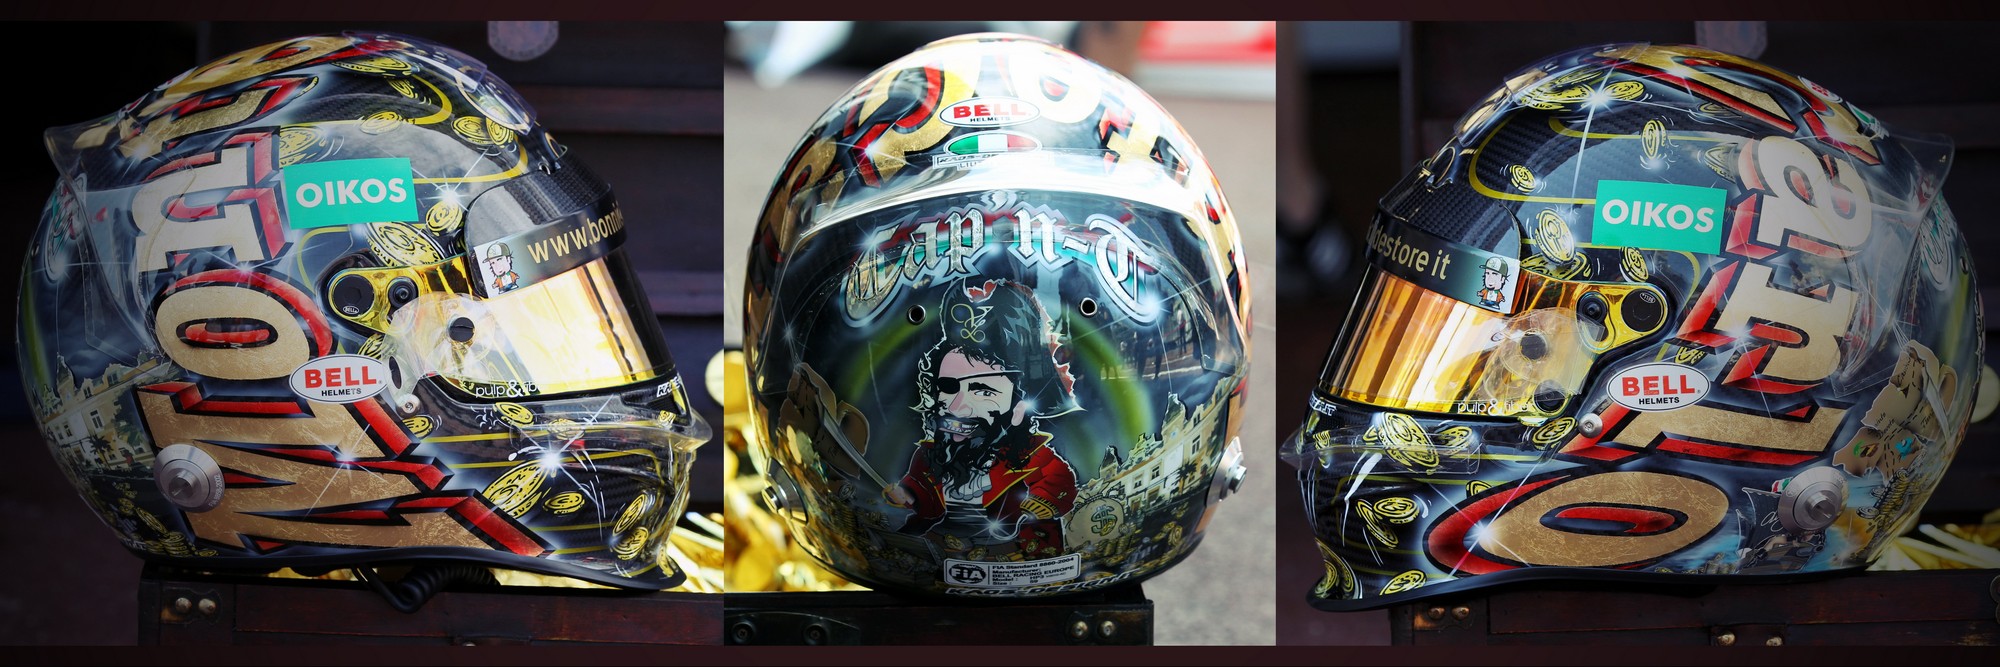 Шлем Витантонио Лиуцци на Гран-При Монако 2011 года | 2011 Monaco Grand Prix helmet of Vitantonio Liuzzi